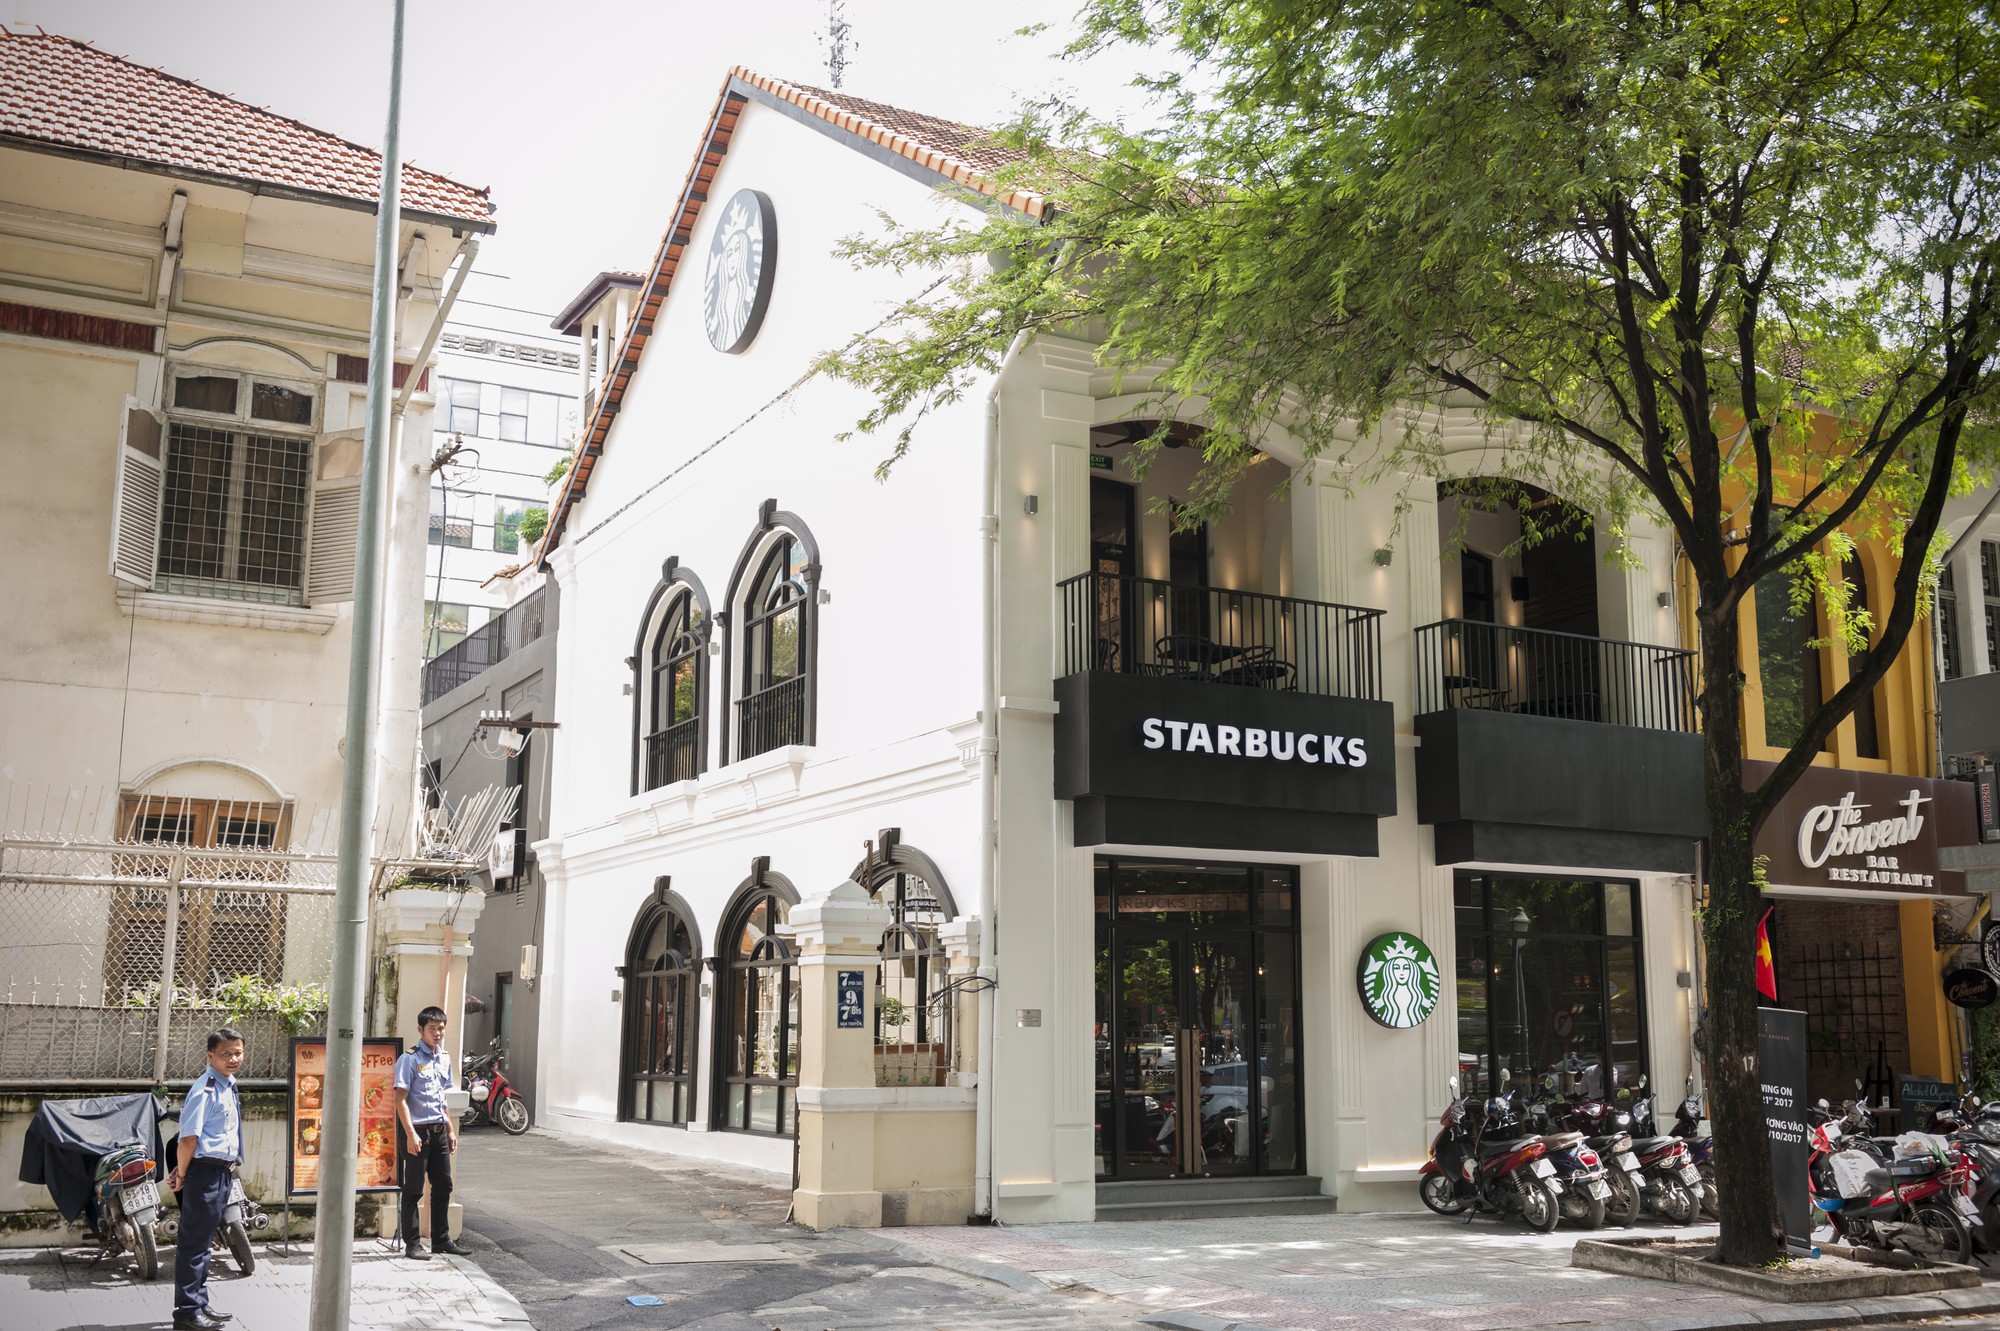 Khách mất Macbook gần 40 triệu tại cửa hàng Starbucks ở Sài Gòn, Giám đốc truyền thông lên tiếng: Chúng tôi không cố tình bao che kẻ trộm - Ảnh 1.